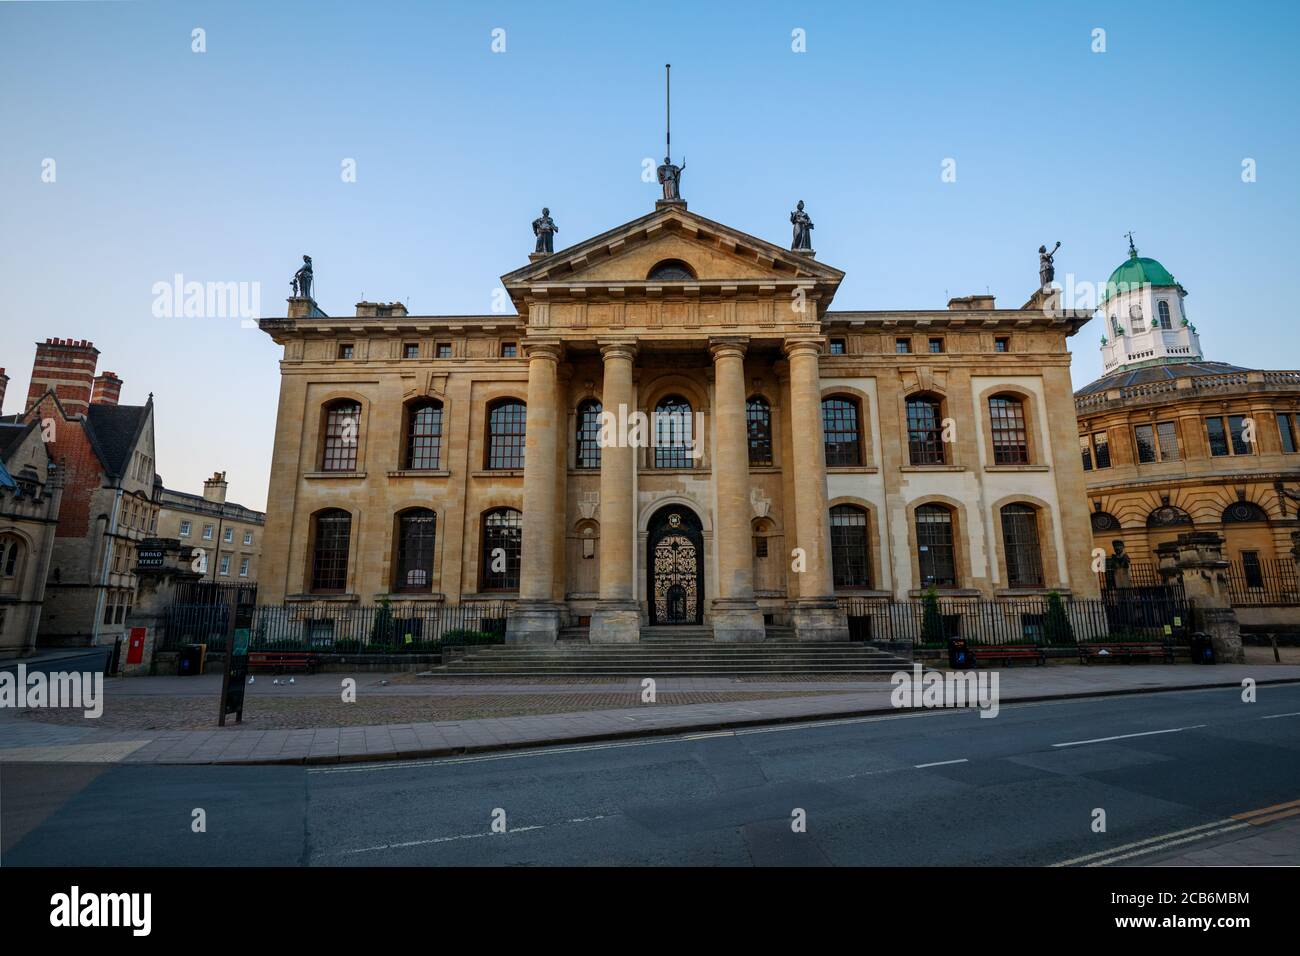 Das Clarendon Building von der Broad Street in Oxford ohne Leute. Früh am Morgen mit dem Sheldonian Theater daneben. Oxford, England, Großbritannien. Stockfoto